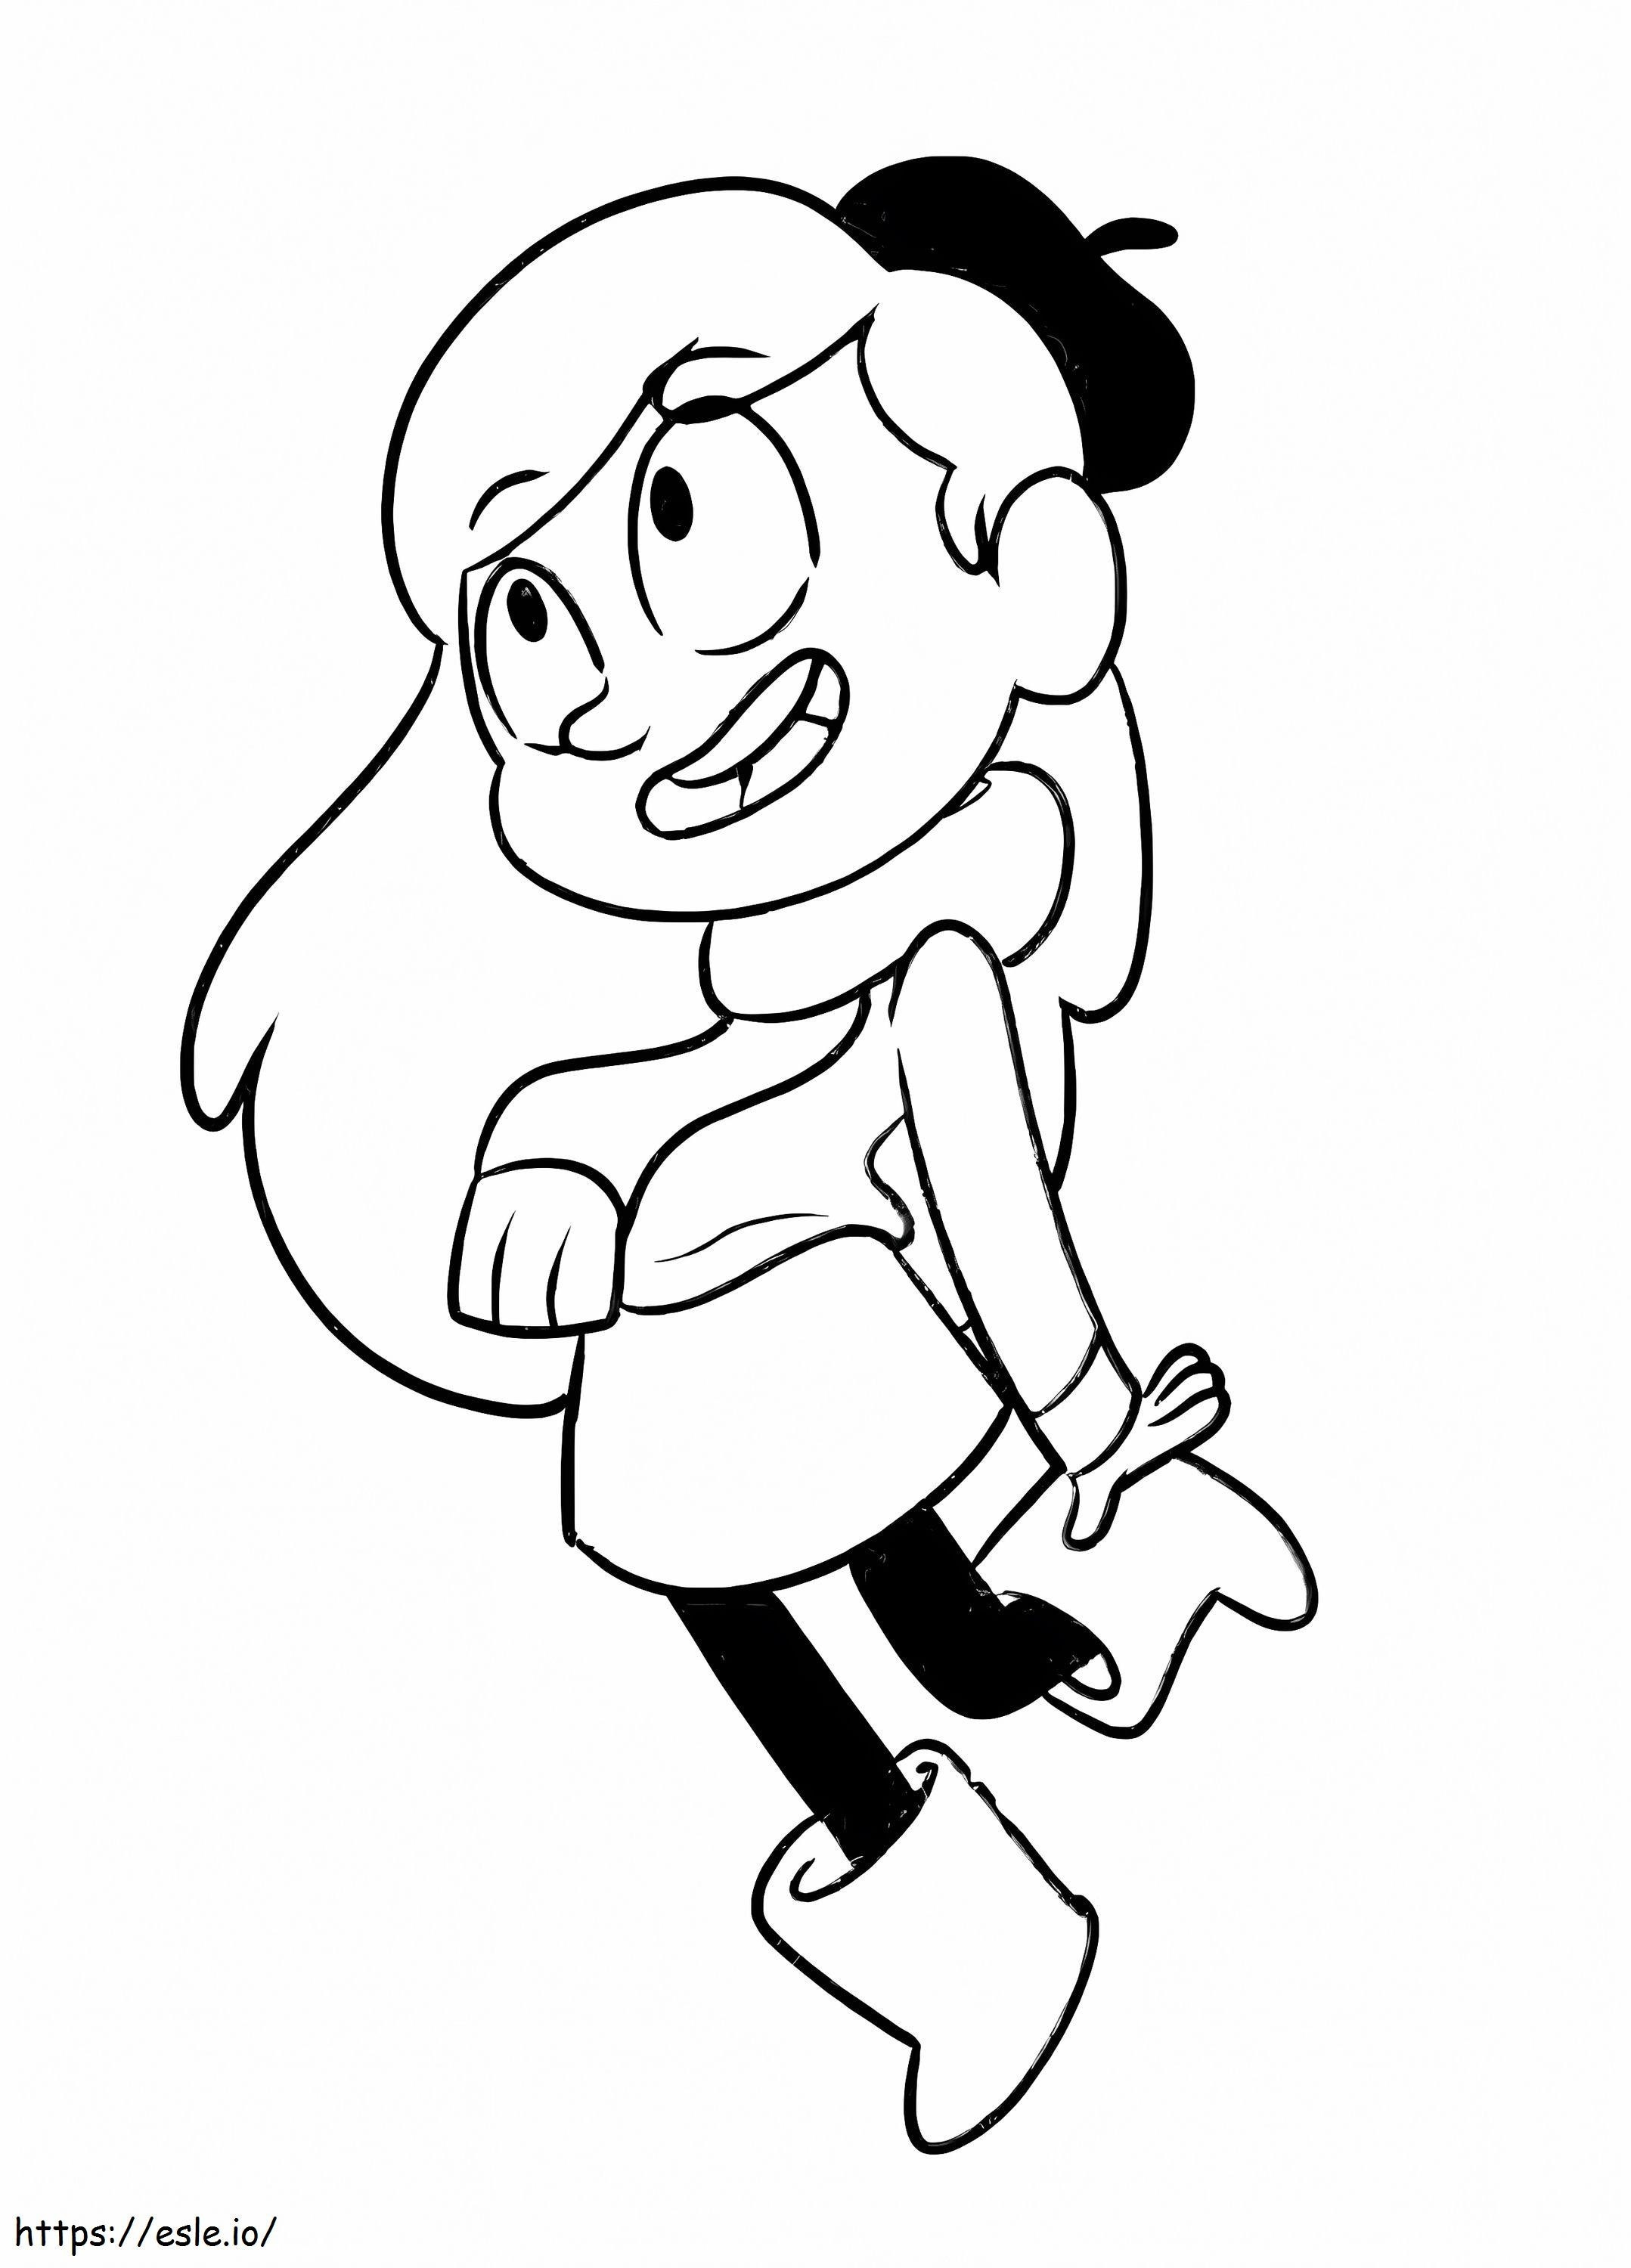 Happy Hilda coloring page